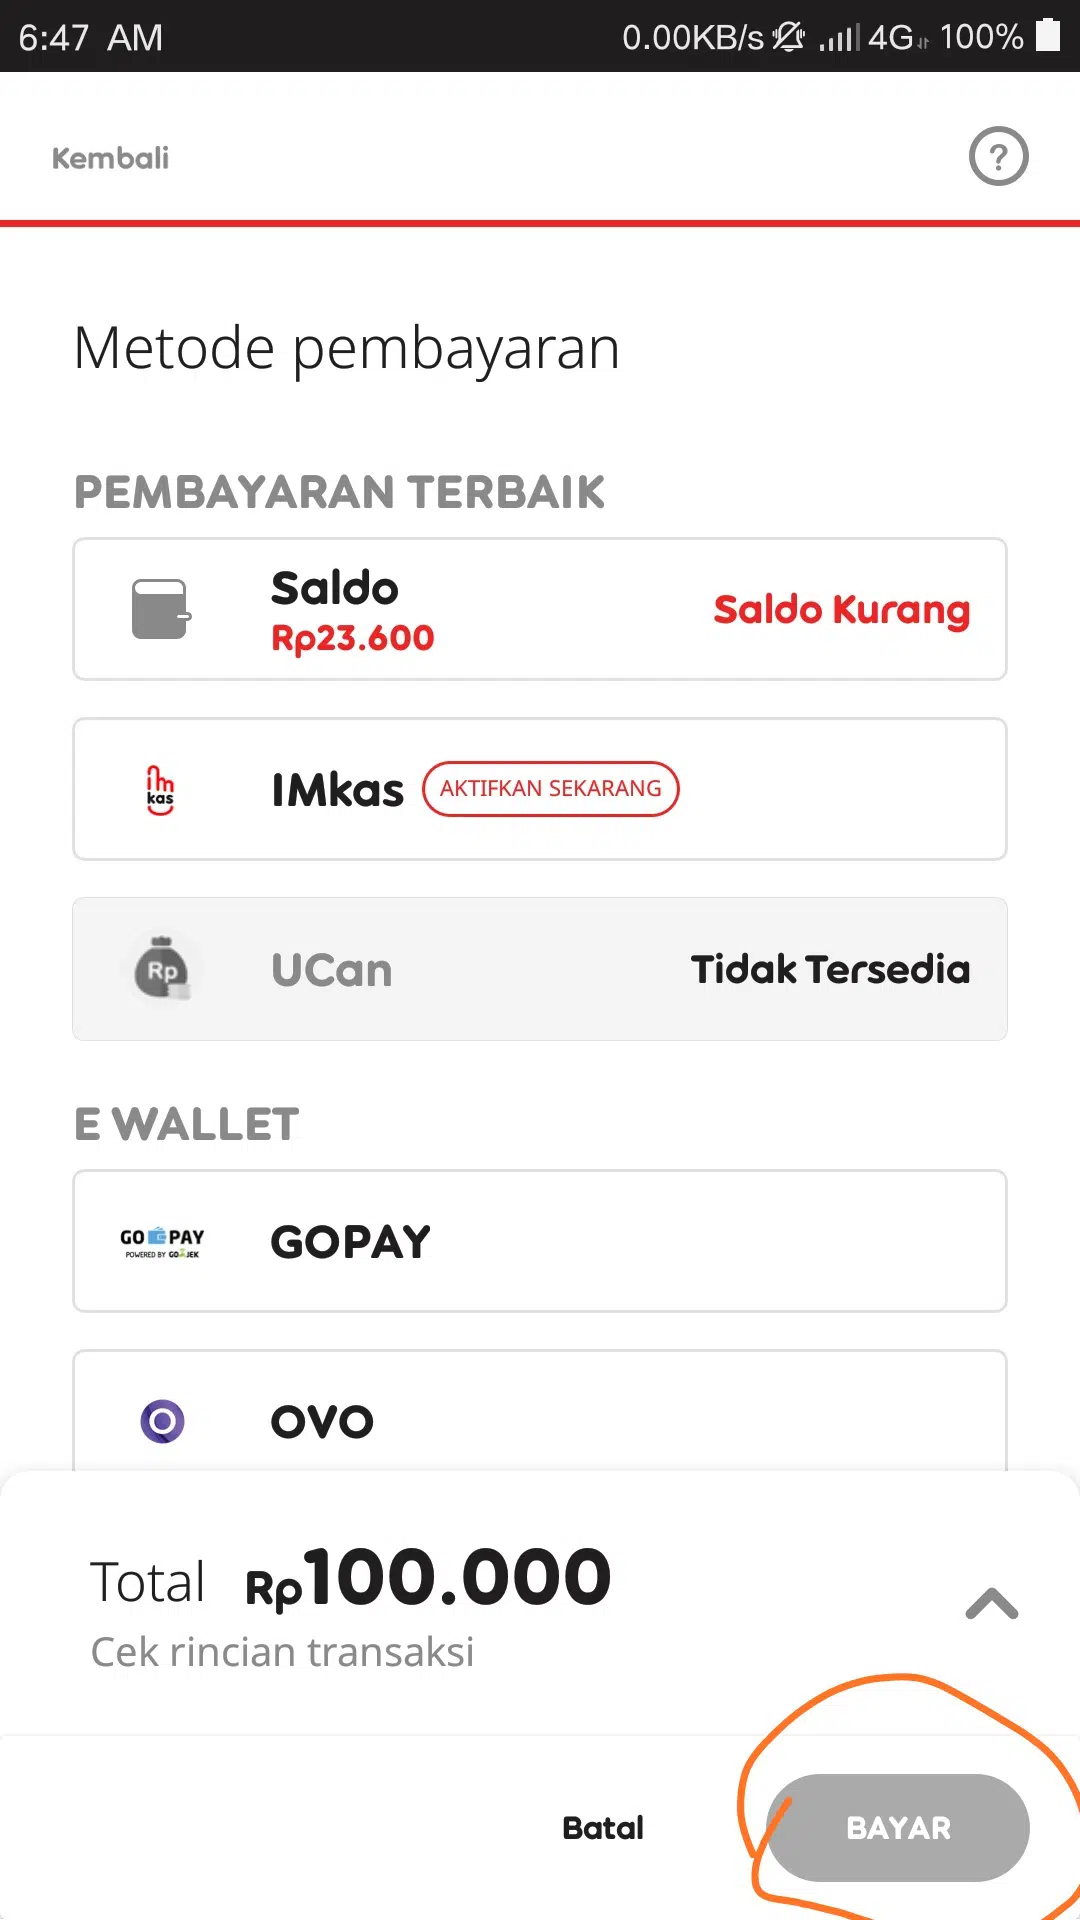 Tunggu konfirmasi dari Indosat mengenai pembeliannya